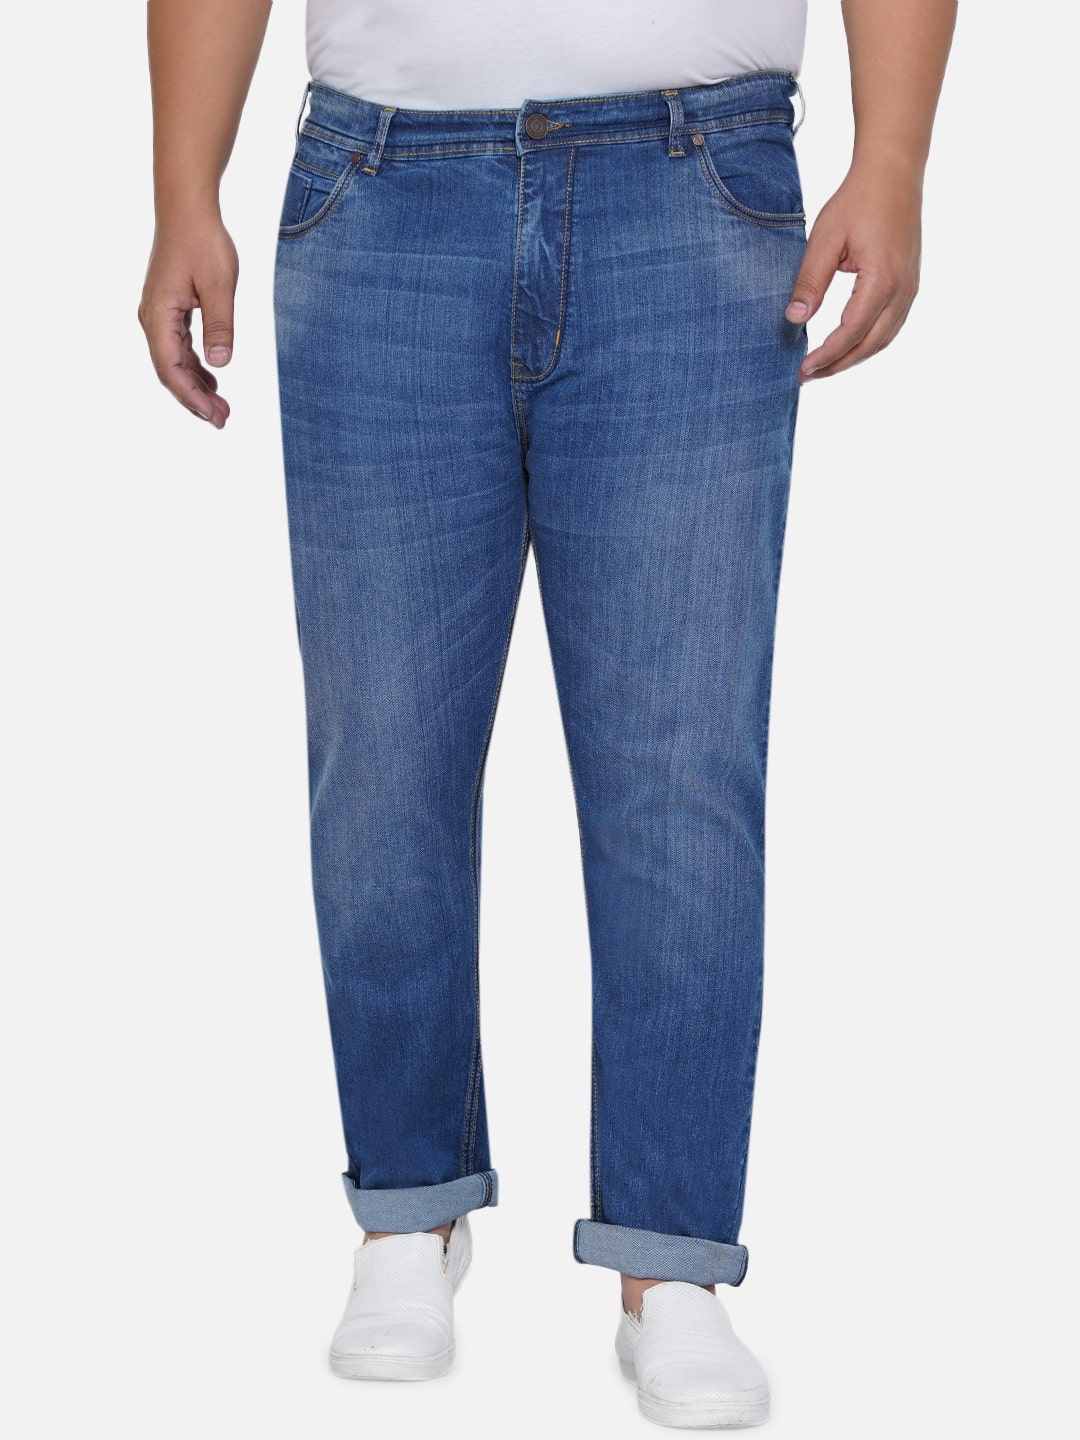 bottomwear/jeans/EJPJ25012/ejpj25012-2.jpg